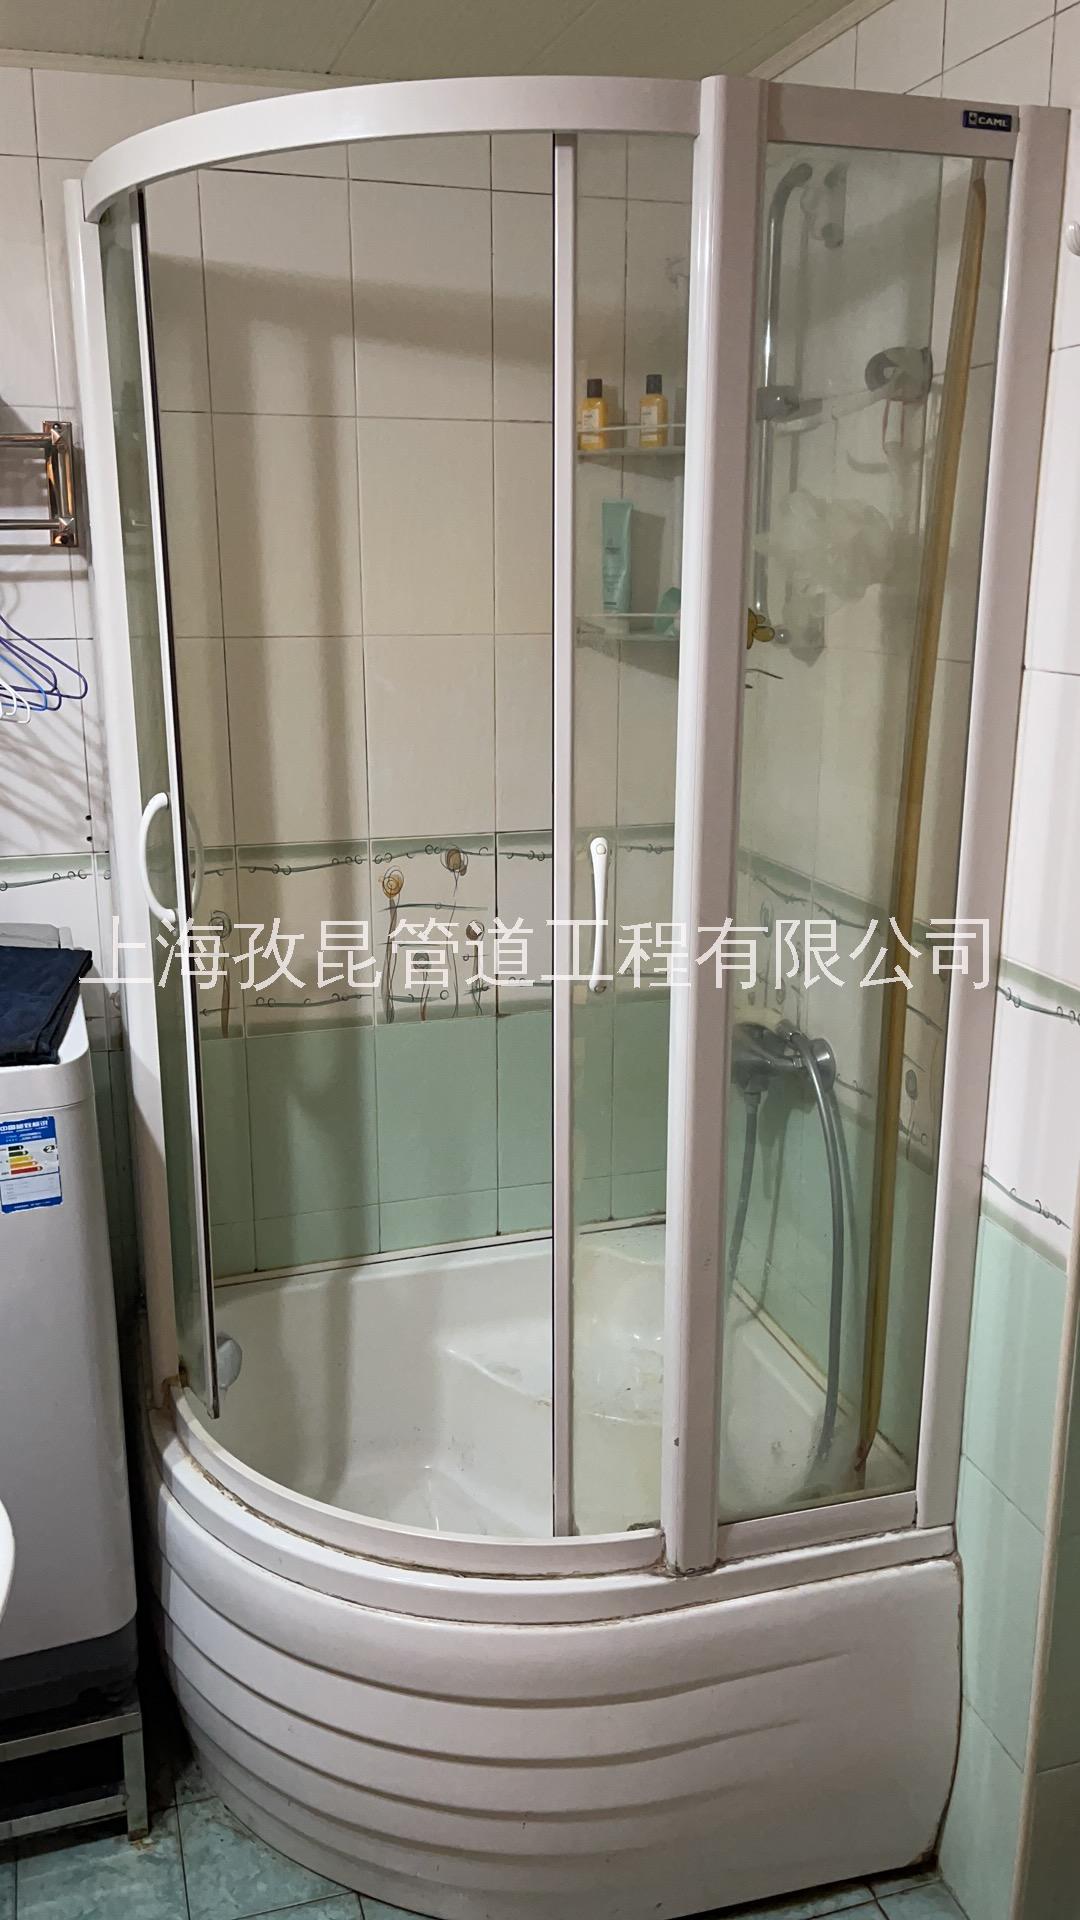 供应罗卡淋浴房维修 上海罗卡淋浴房维修63185692淋浴房定做 附近维修淋浴房